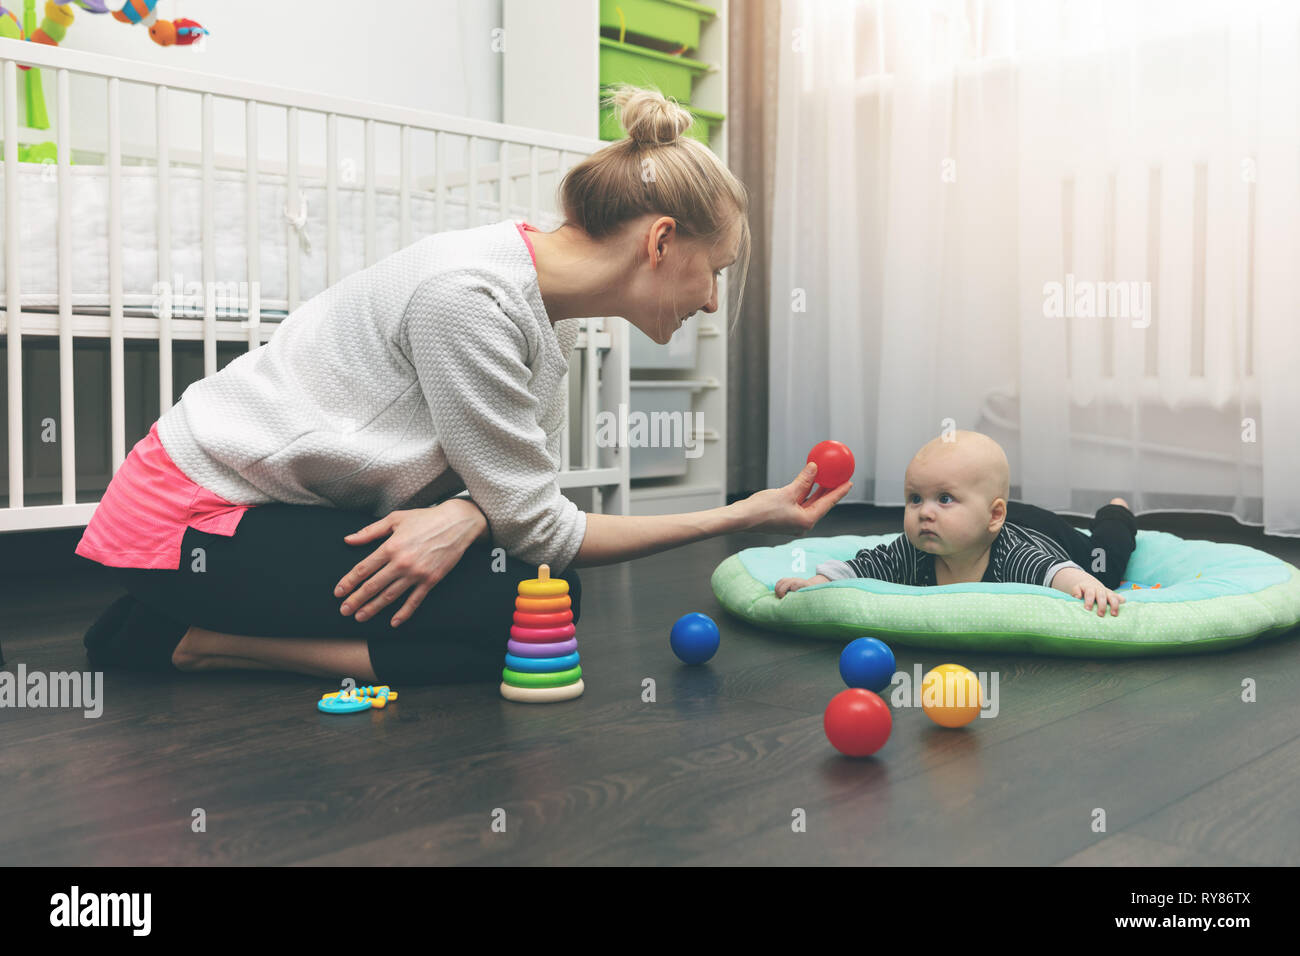 Servizio baby - nanny giocando con il piccolo bambino sul pavimento a casa Foto Stock